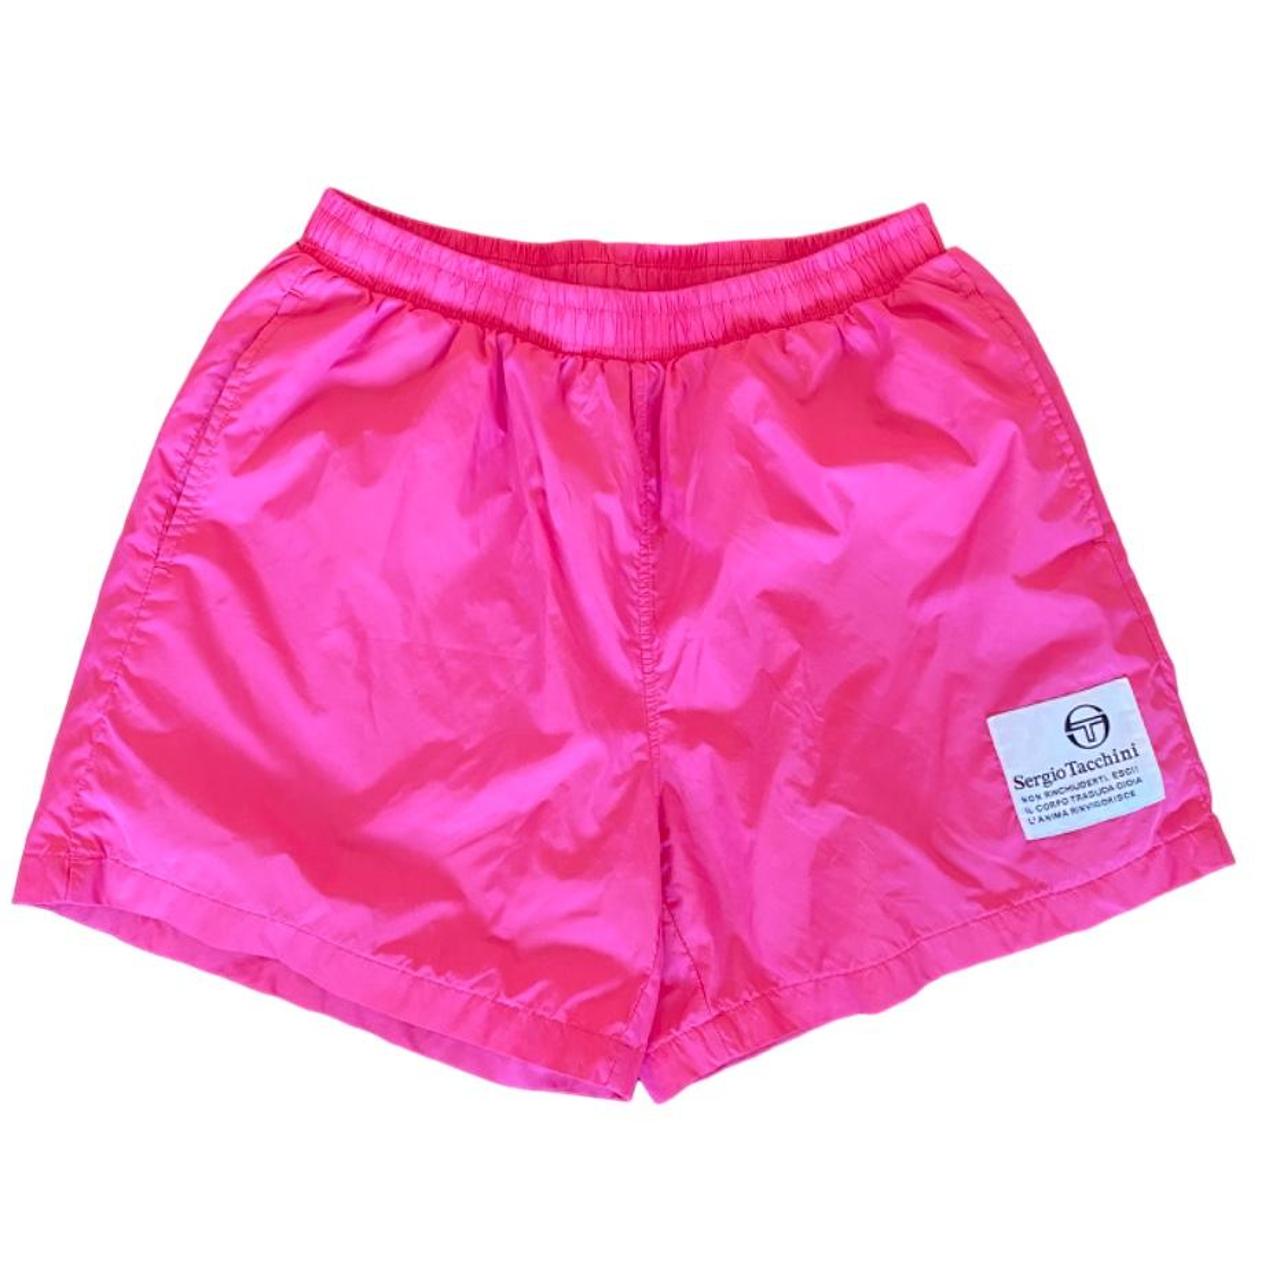 Sergio Tacchini Men's Pink Swim-briefs-shorts